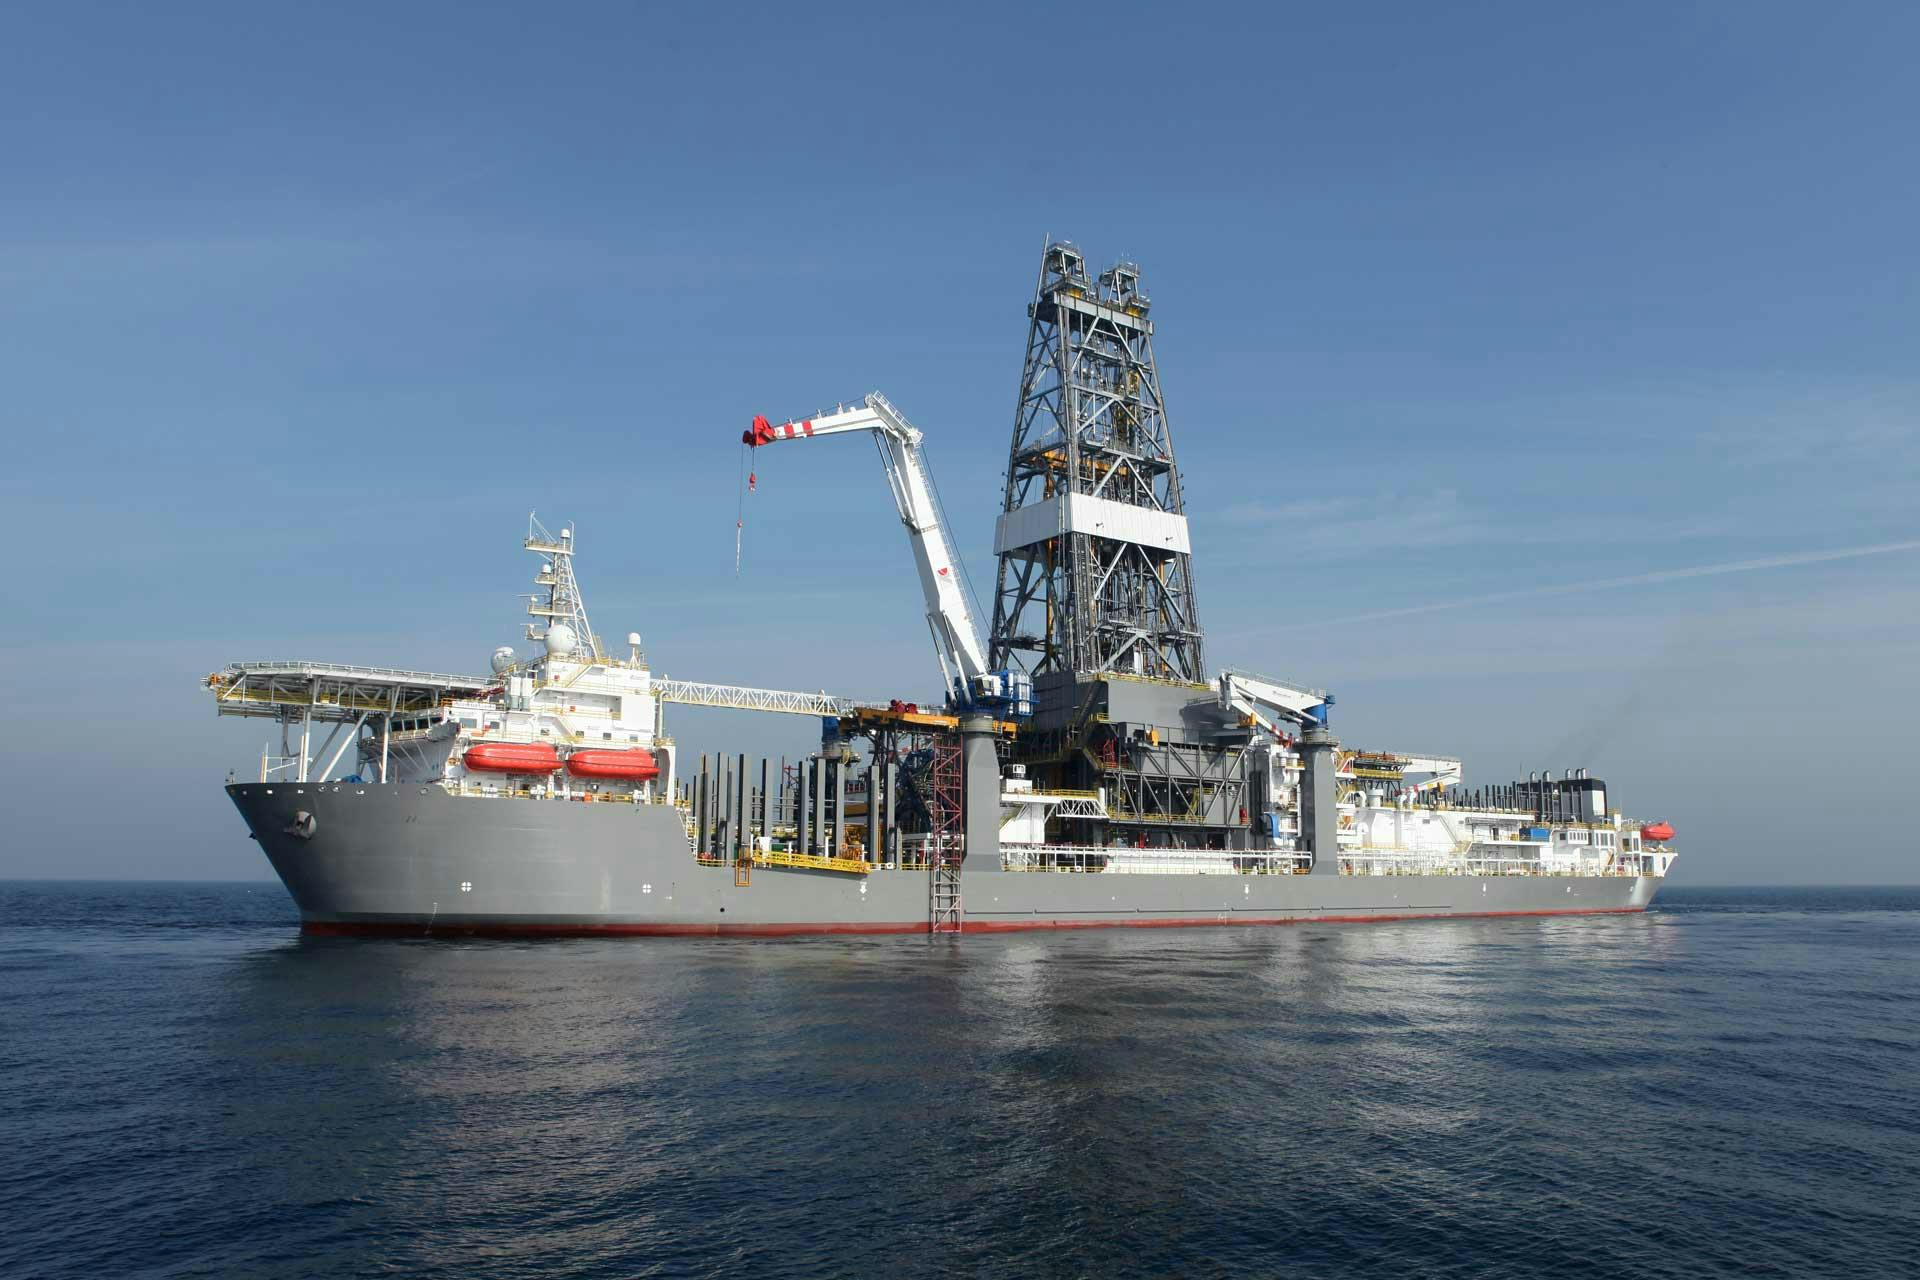 Offshore drillship derrick in the ocean